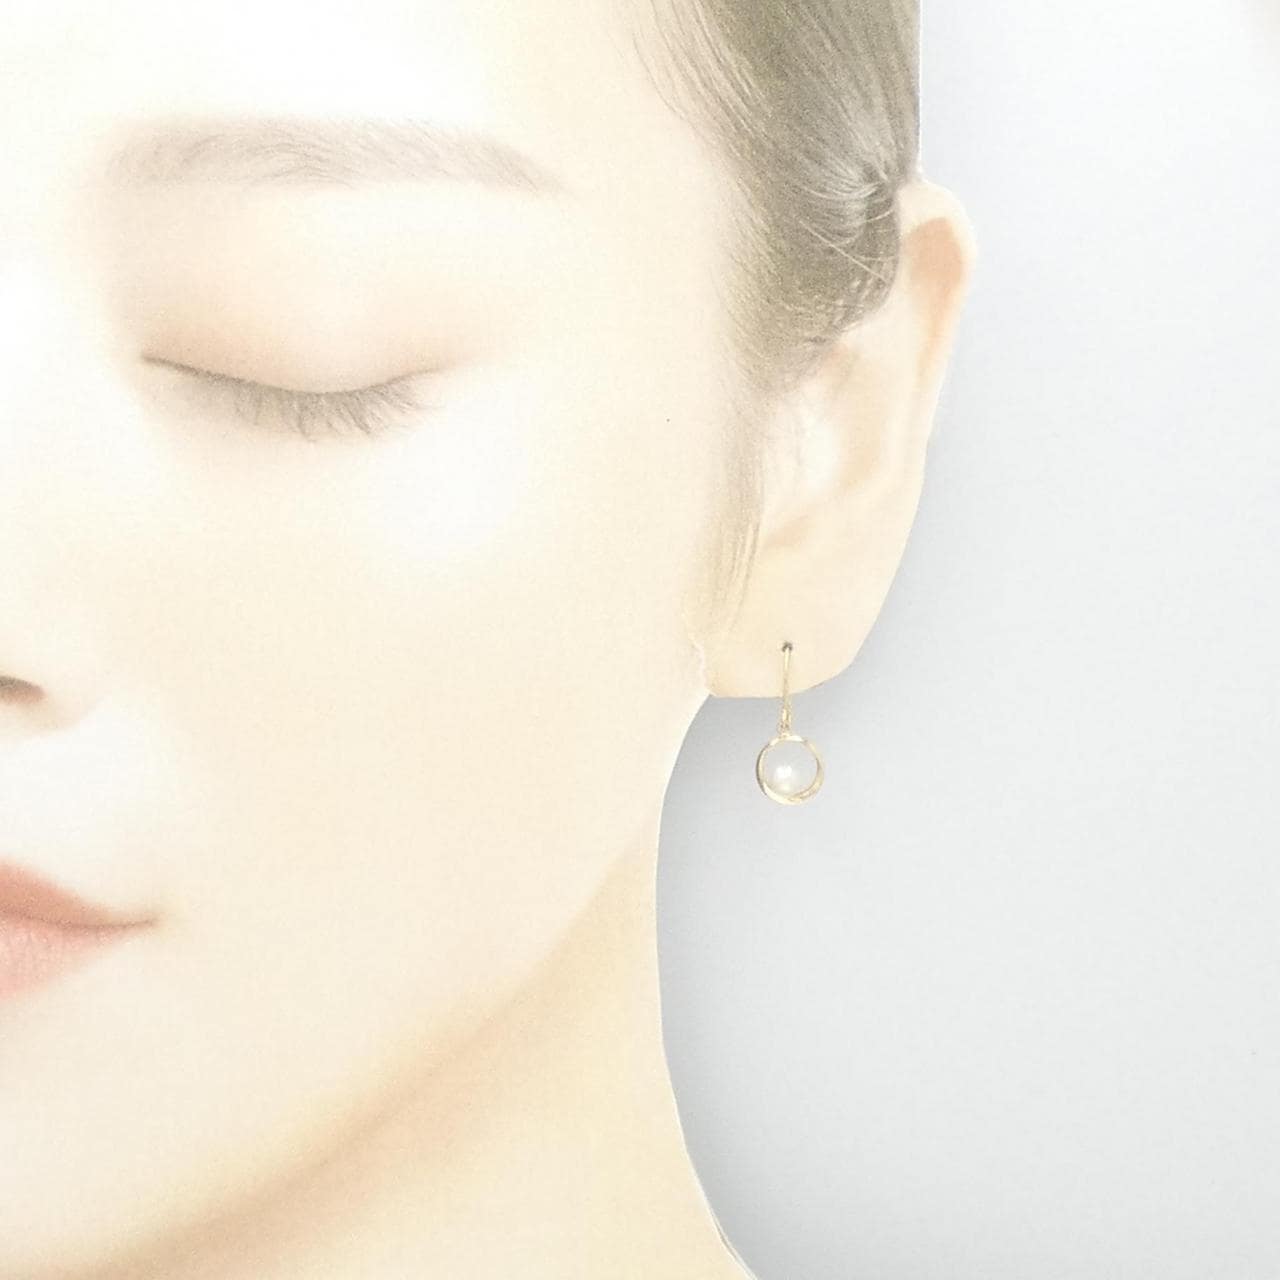 K10YG freshwater pearl earrings 4.0mm